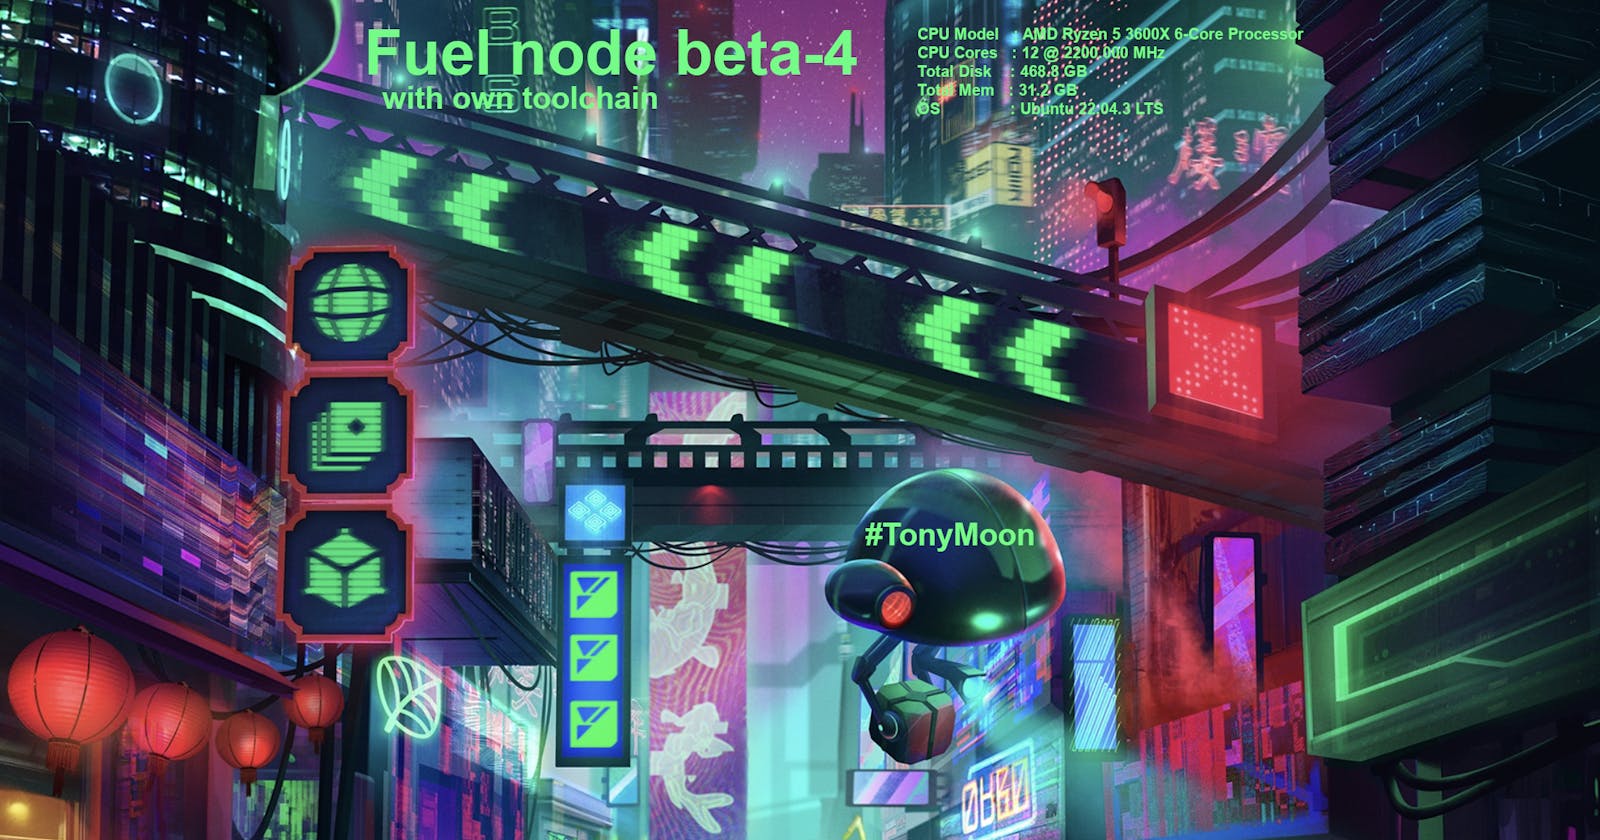 Fuel node beta-4